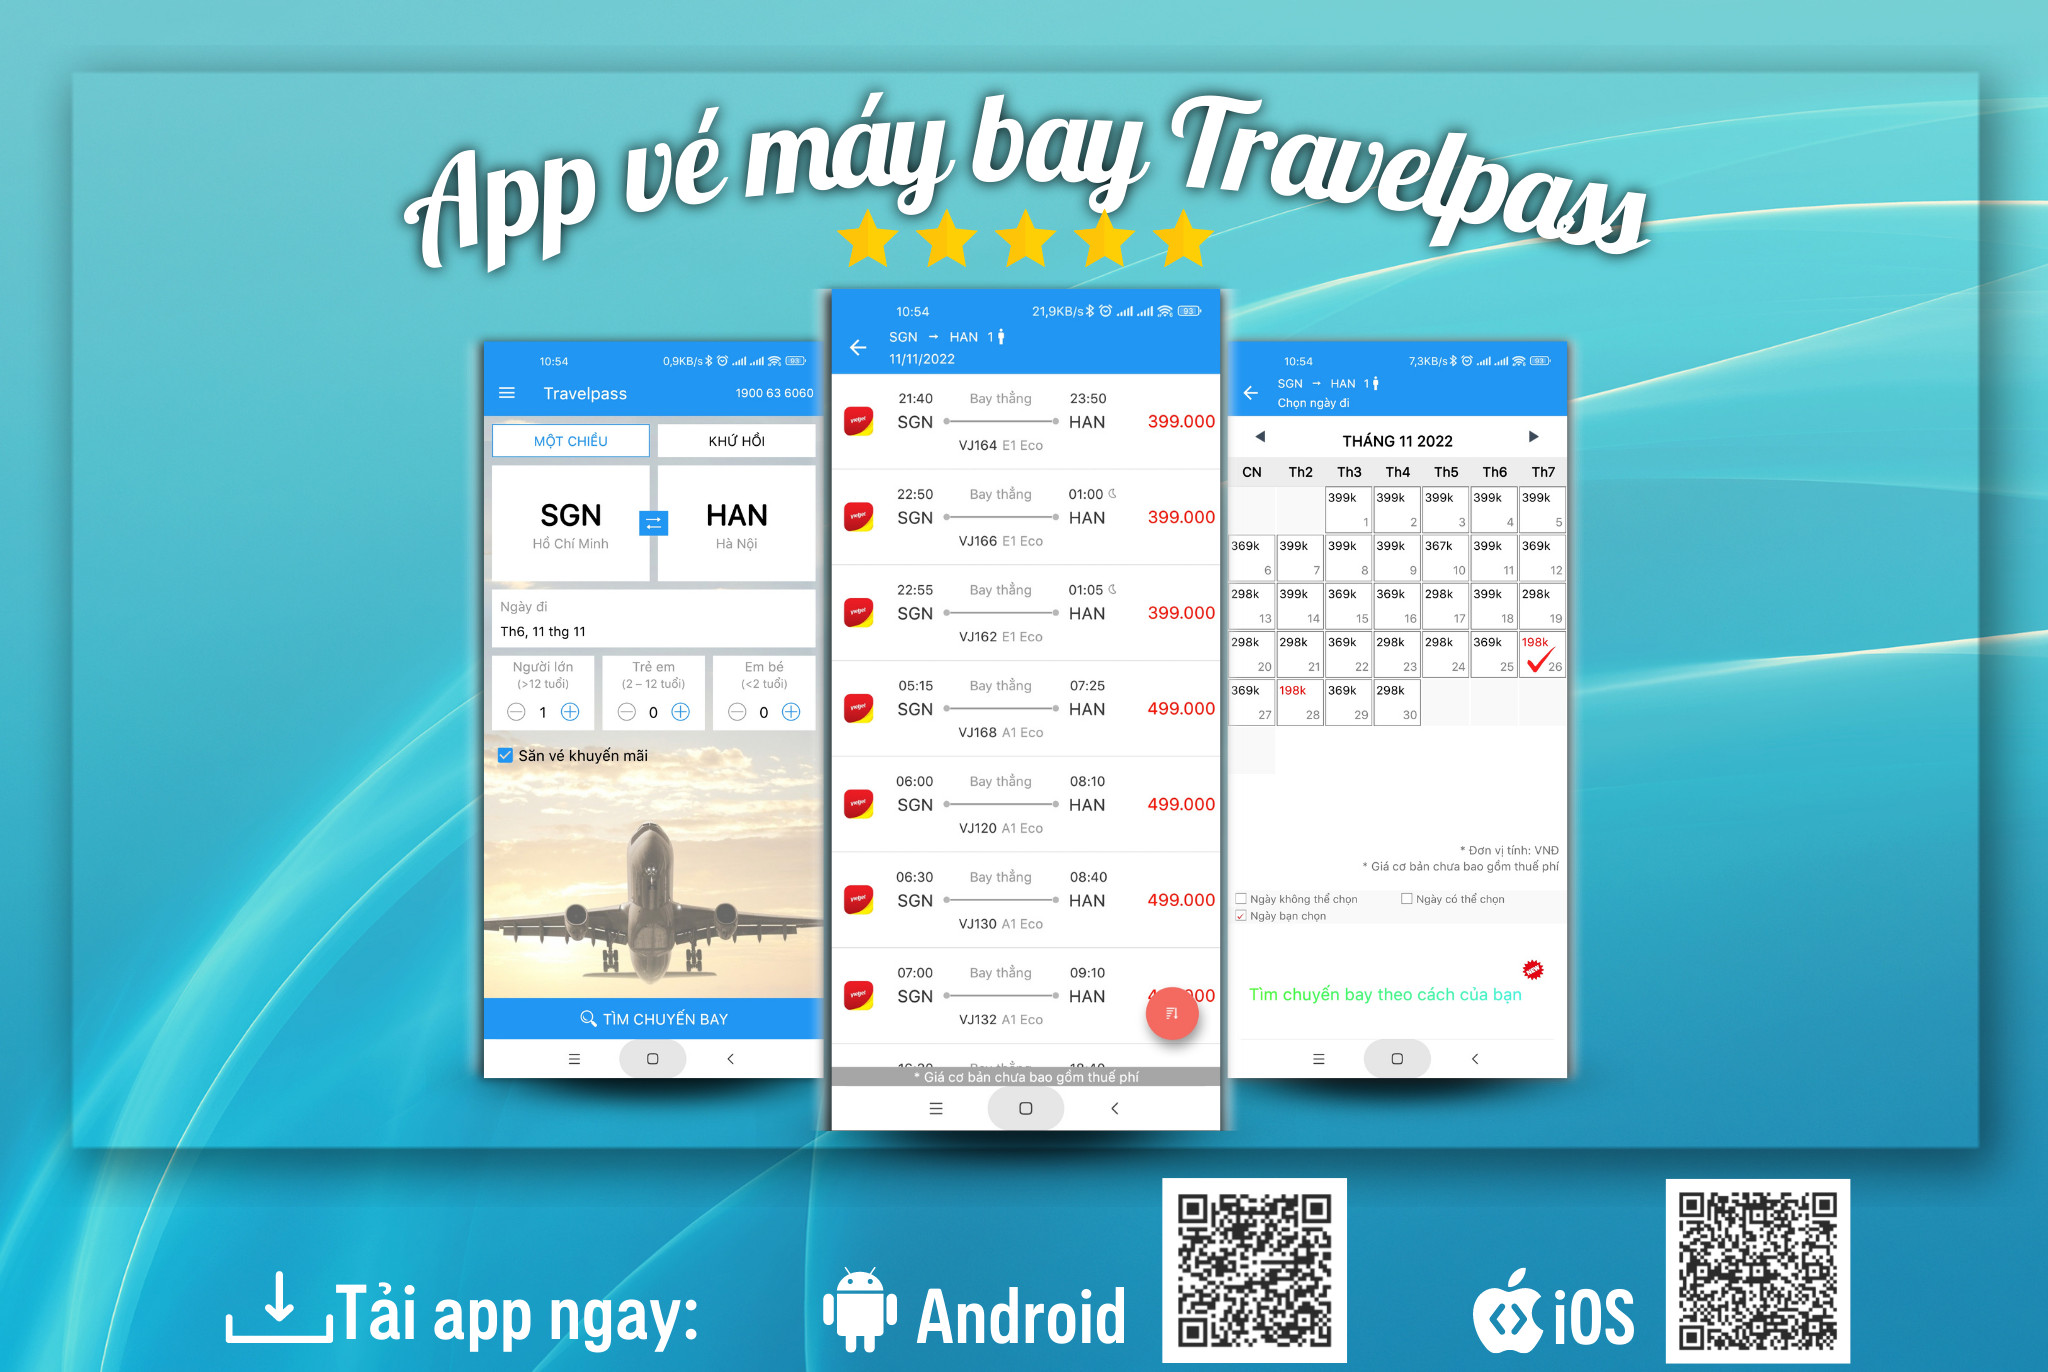 App săn vé máy bay giá rẻ khuyến mãi Travelpass